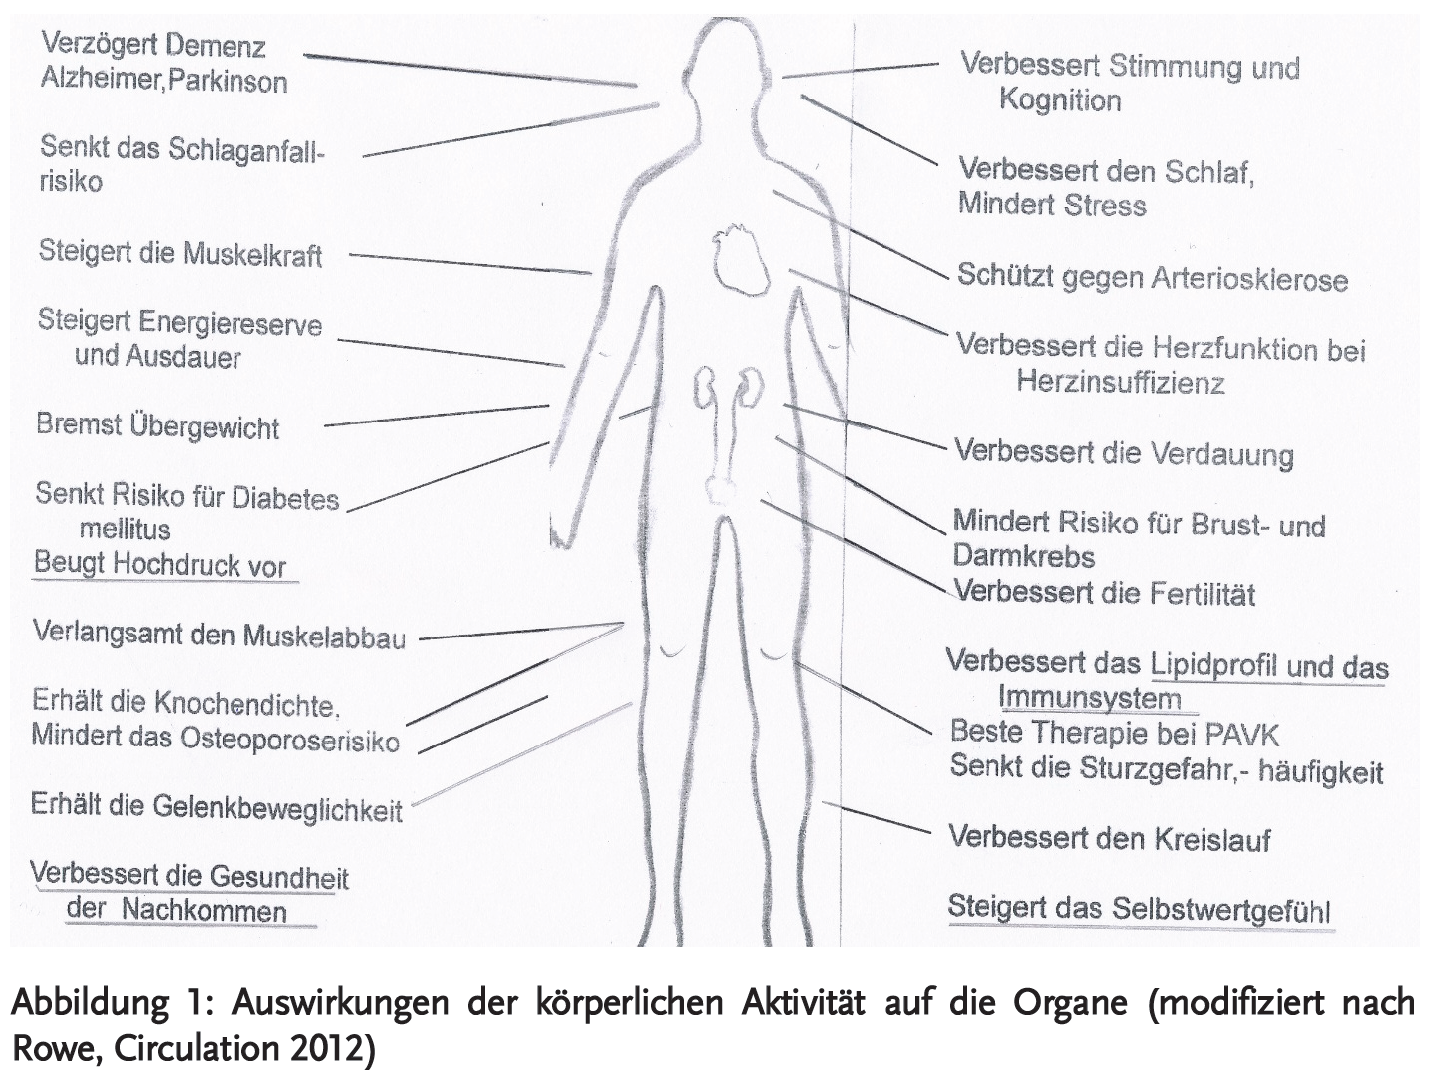 Abbildung 1: Auswirkungen der körperlichen Aktivität auf die Organe (modifiziert nach Rowe, Circulation 2012)